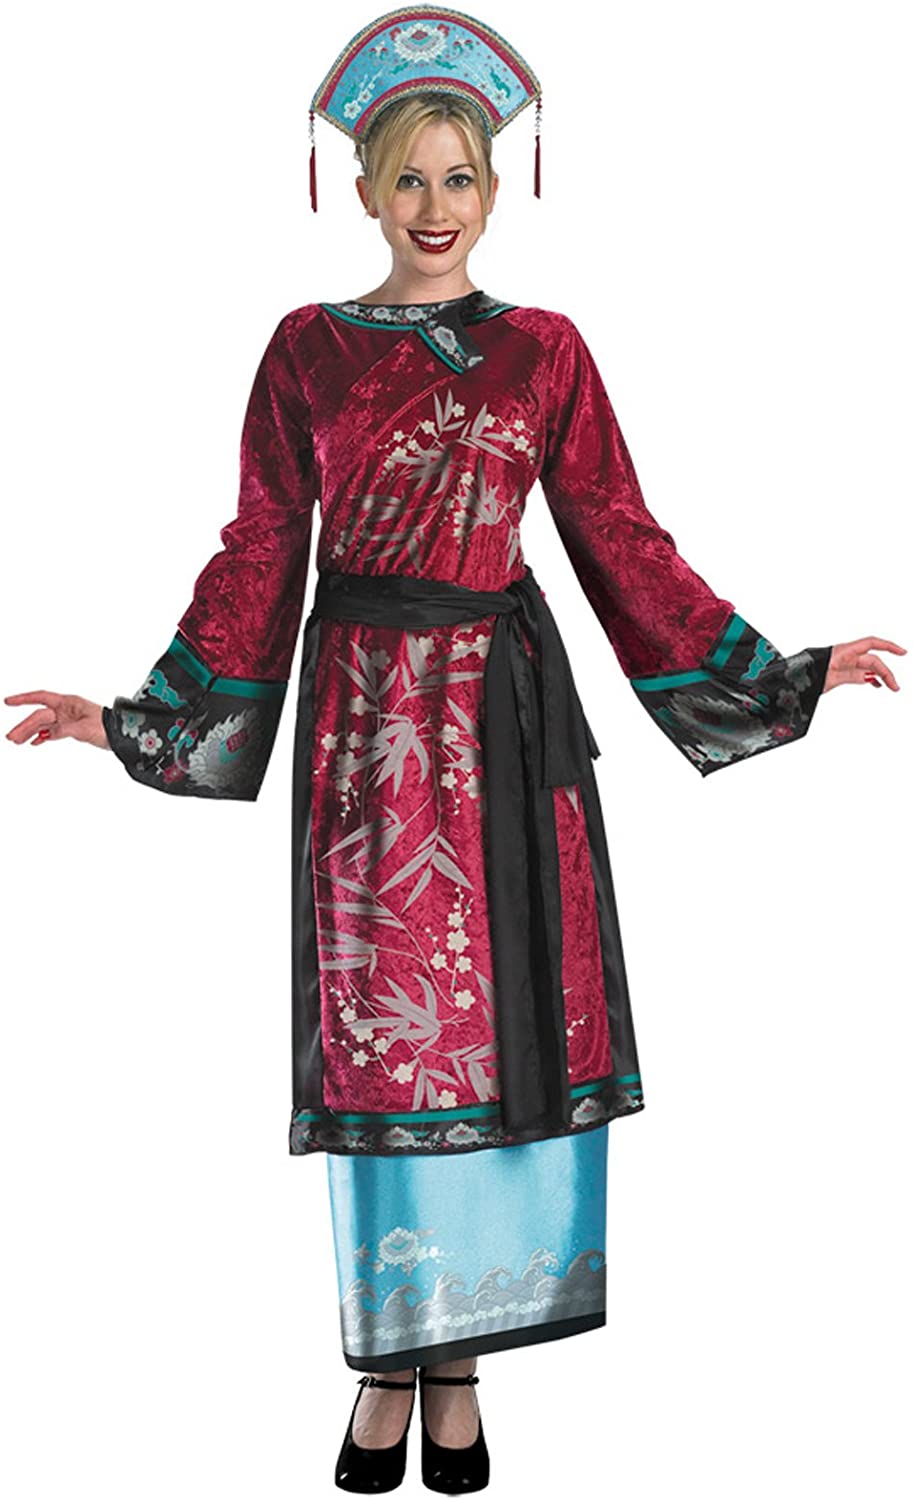 Elizabeth Empress Deluxe Girls Oriental Costume - Child Size 10-12